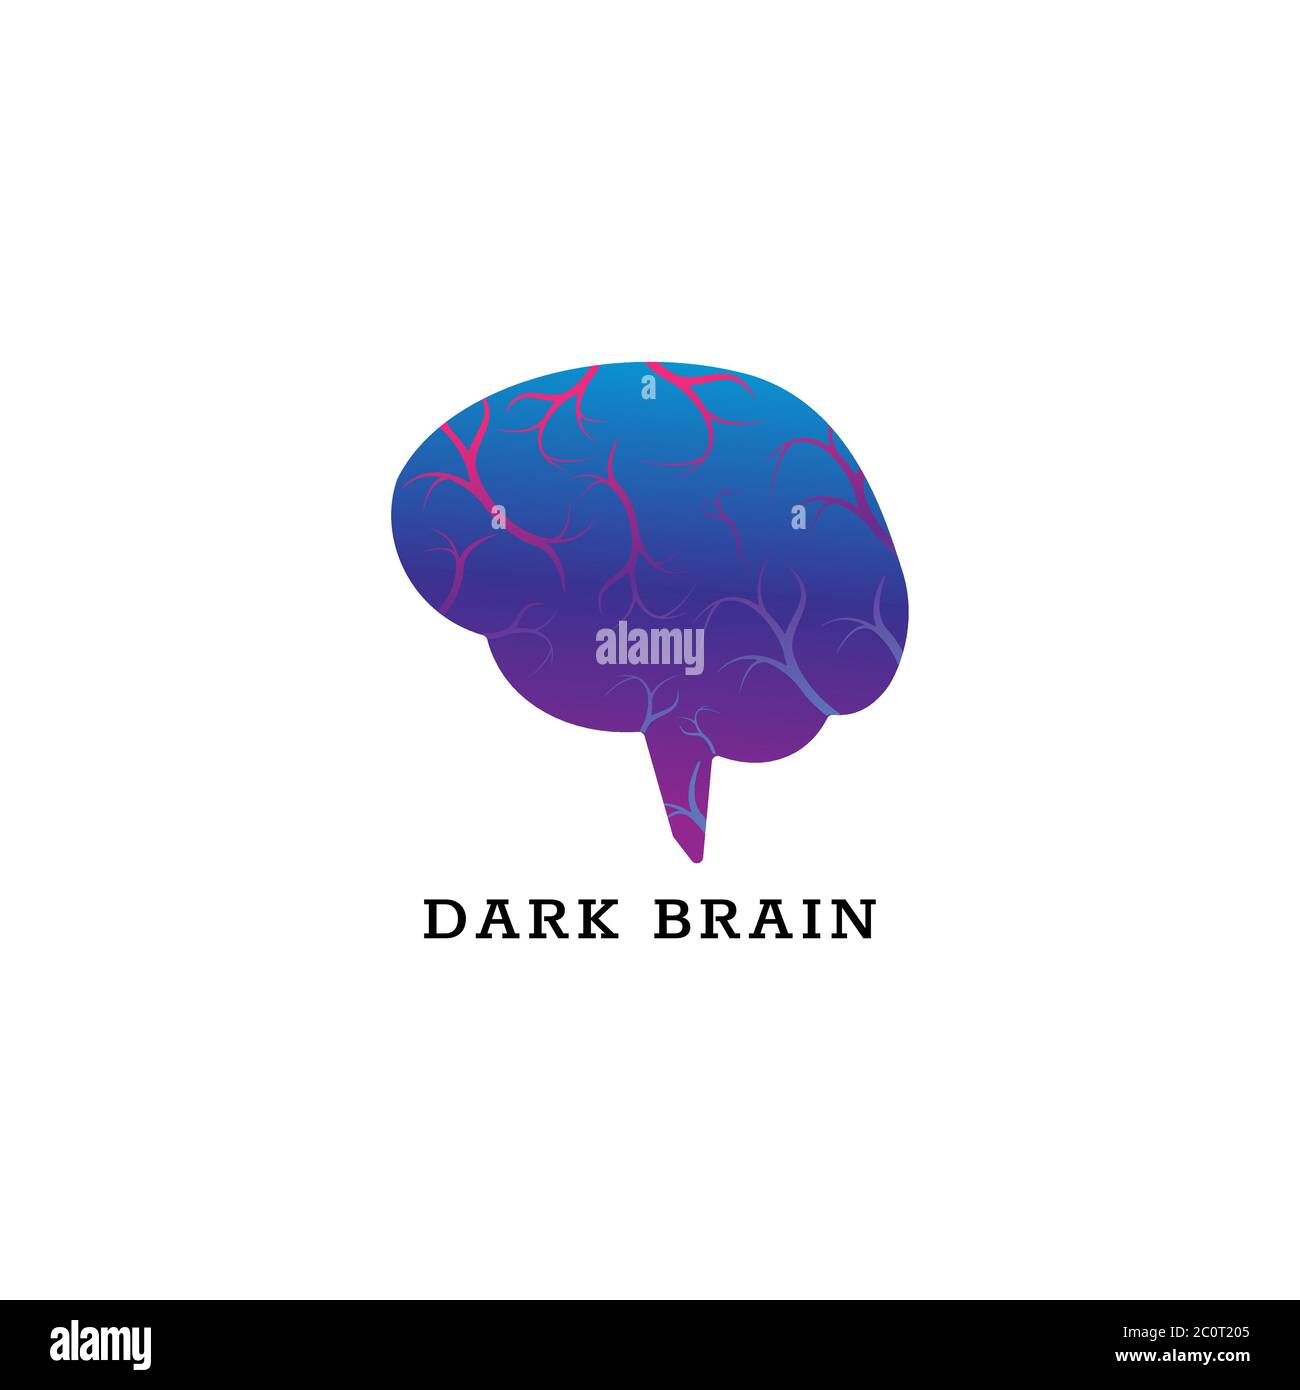 Modèle de conception du logo Dark Brain isolé sur fond blanc. Illustration du vecteur cerveau avec vaisseaux sanguins. Bleu Magenta violet dégradé de couleur violet Illustration de Vecteur